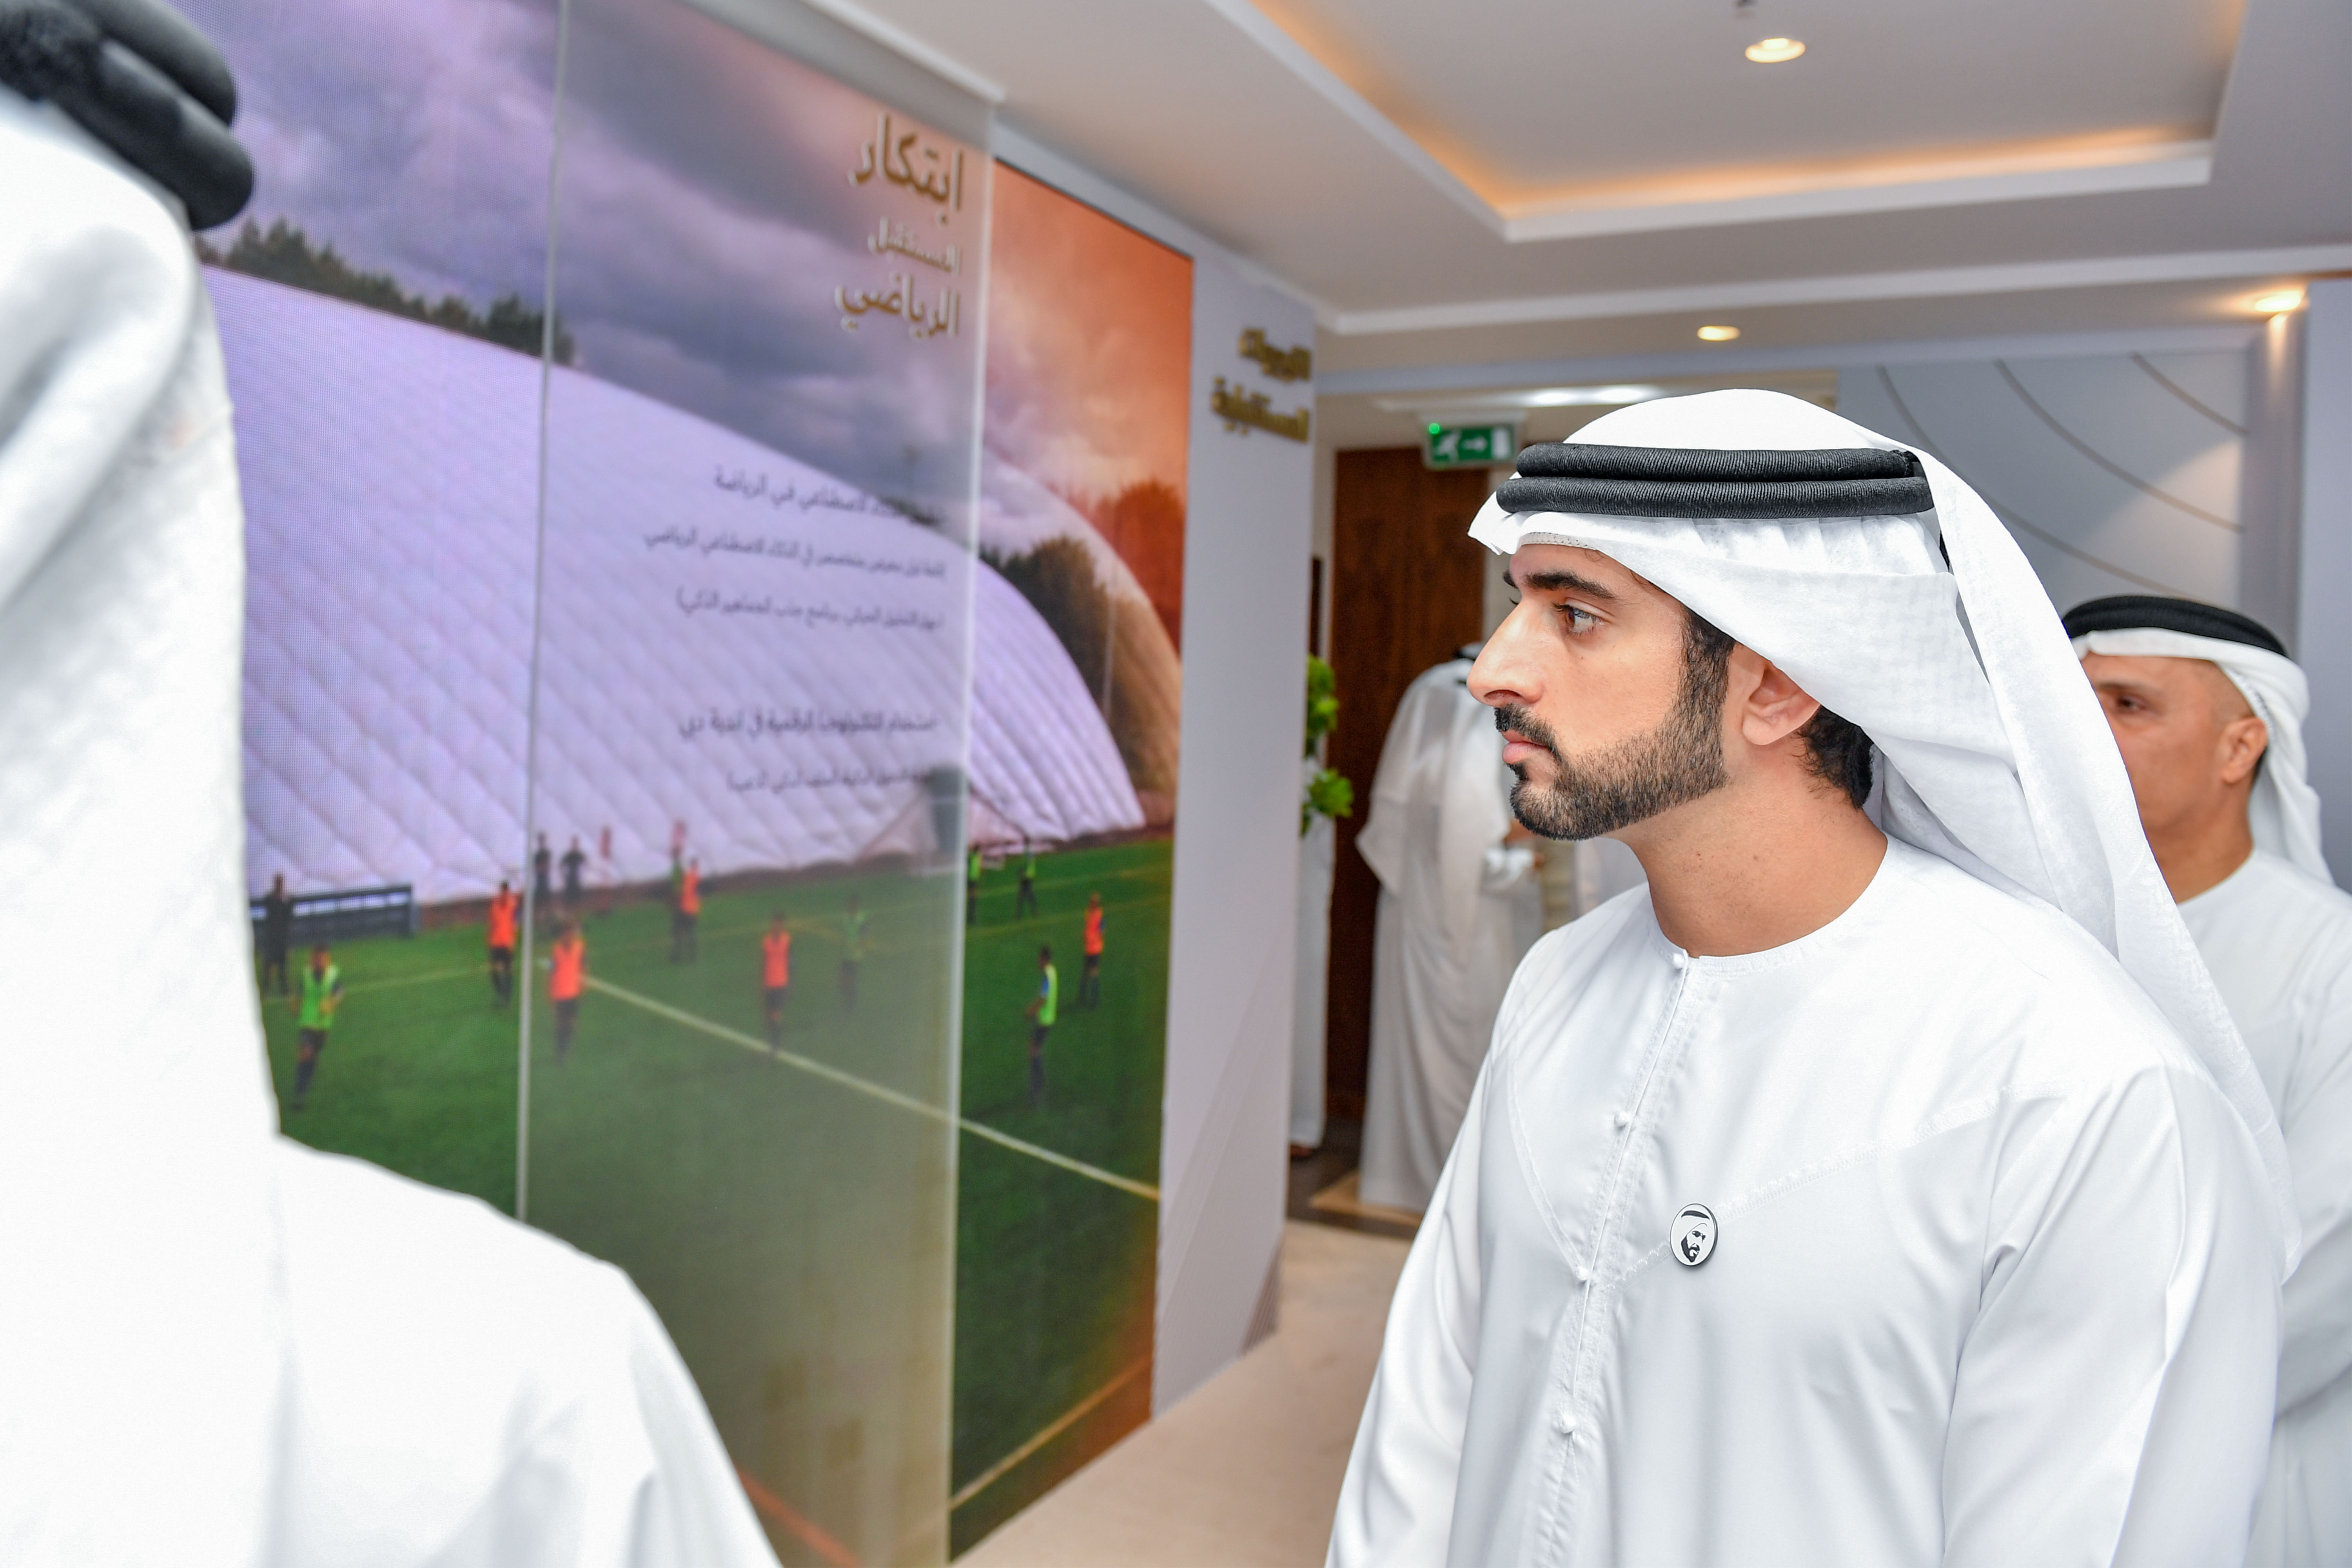 حمدان بن محمد يطلق مبادرات داعمة للرياضة في دبي ويؤكد أهمية تطبيق الحوكمة